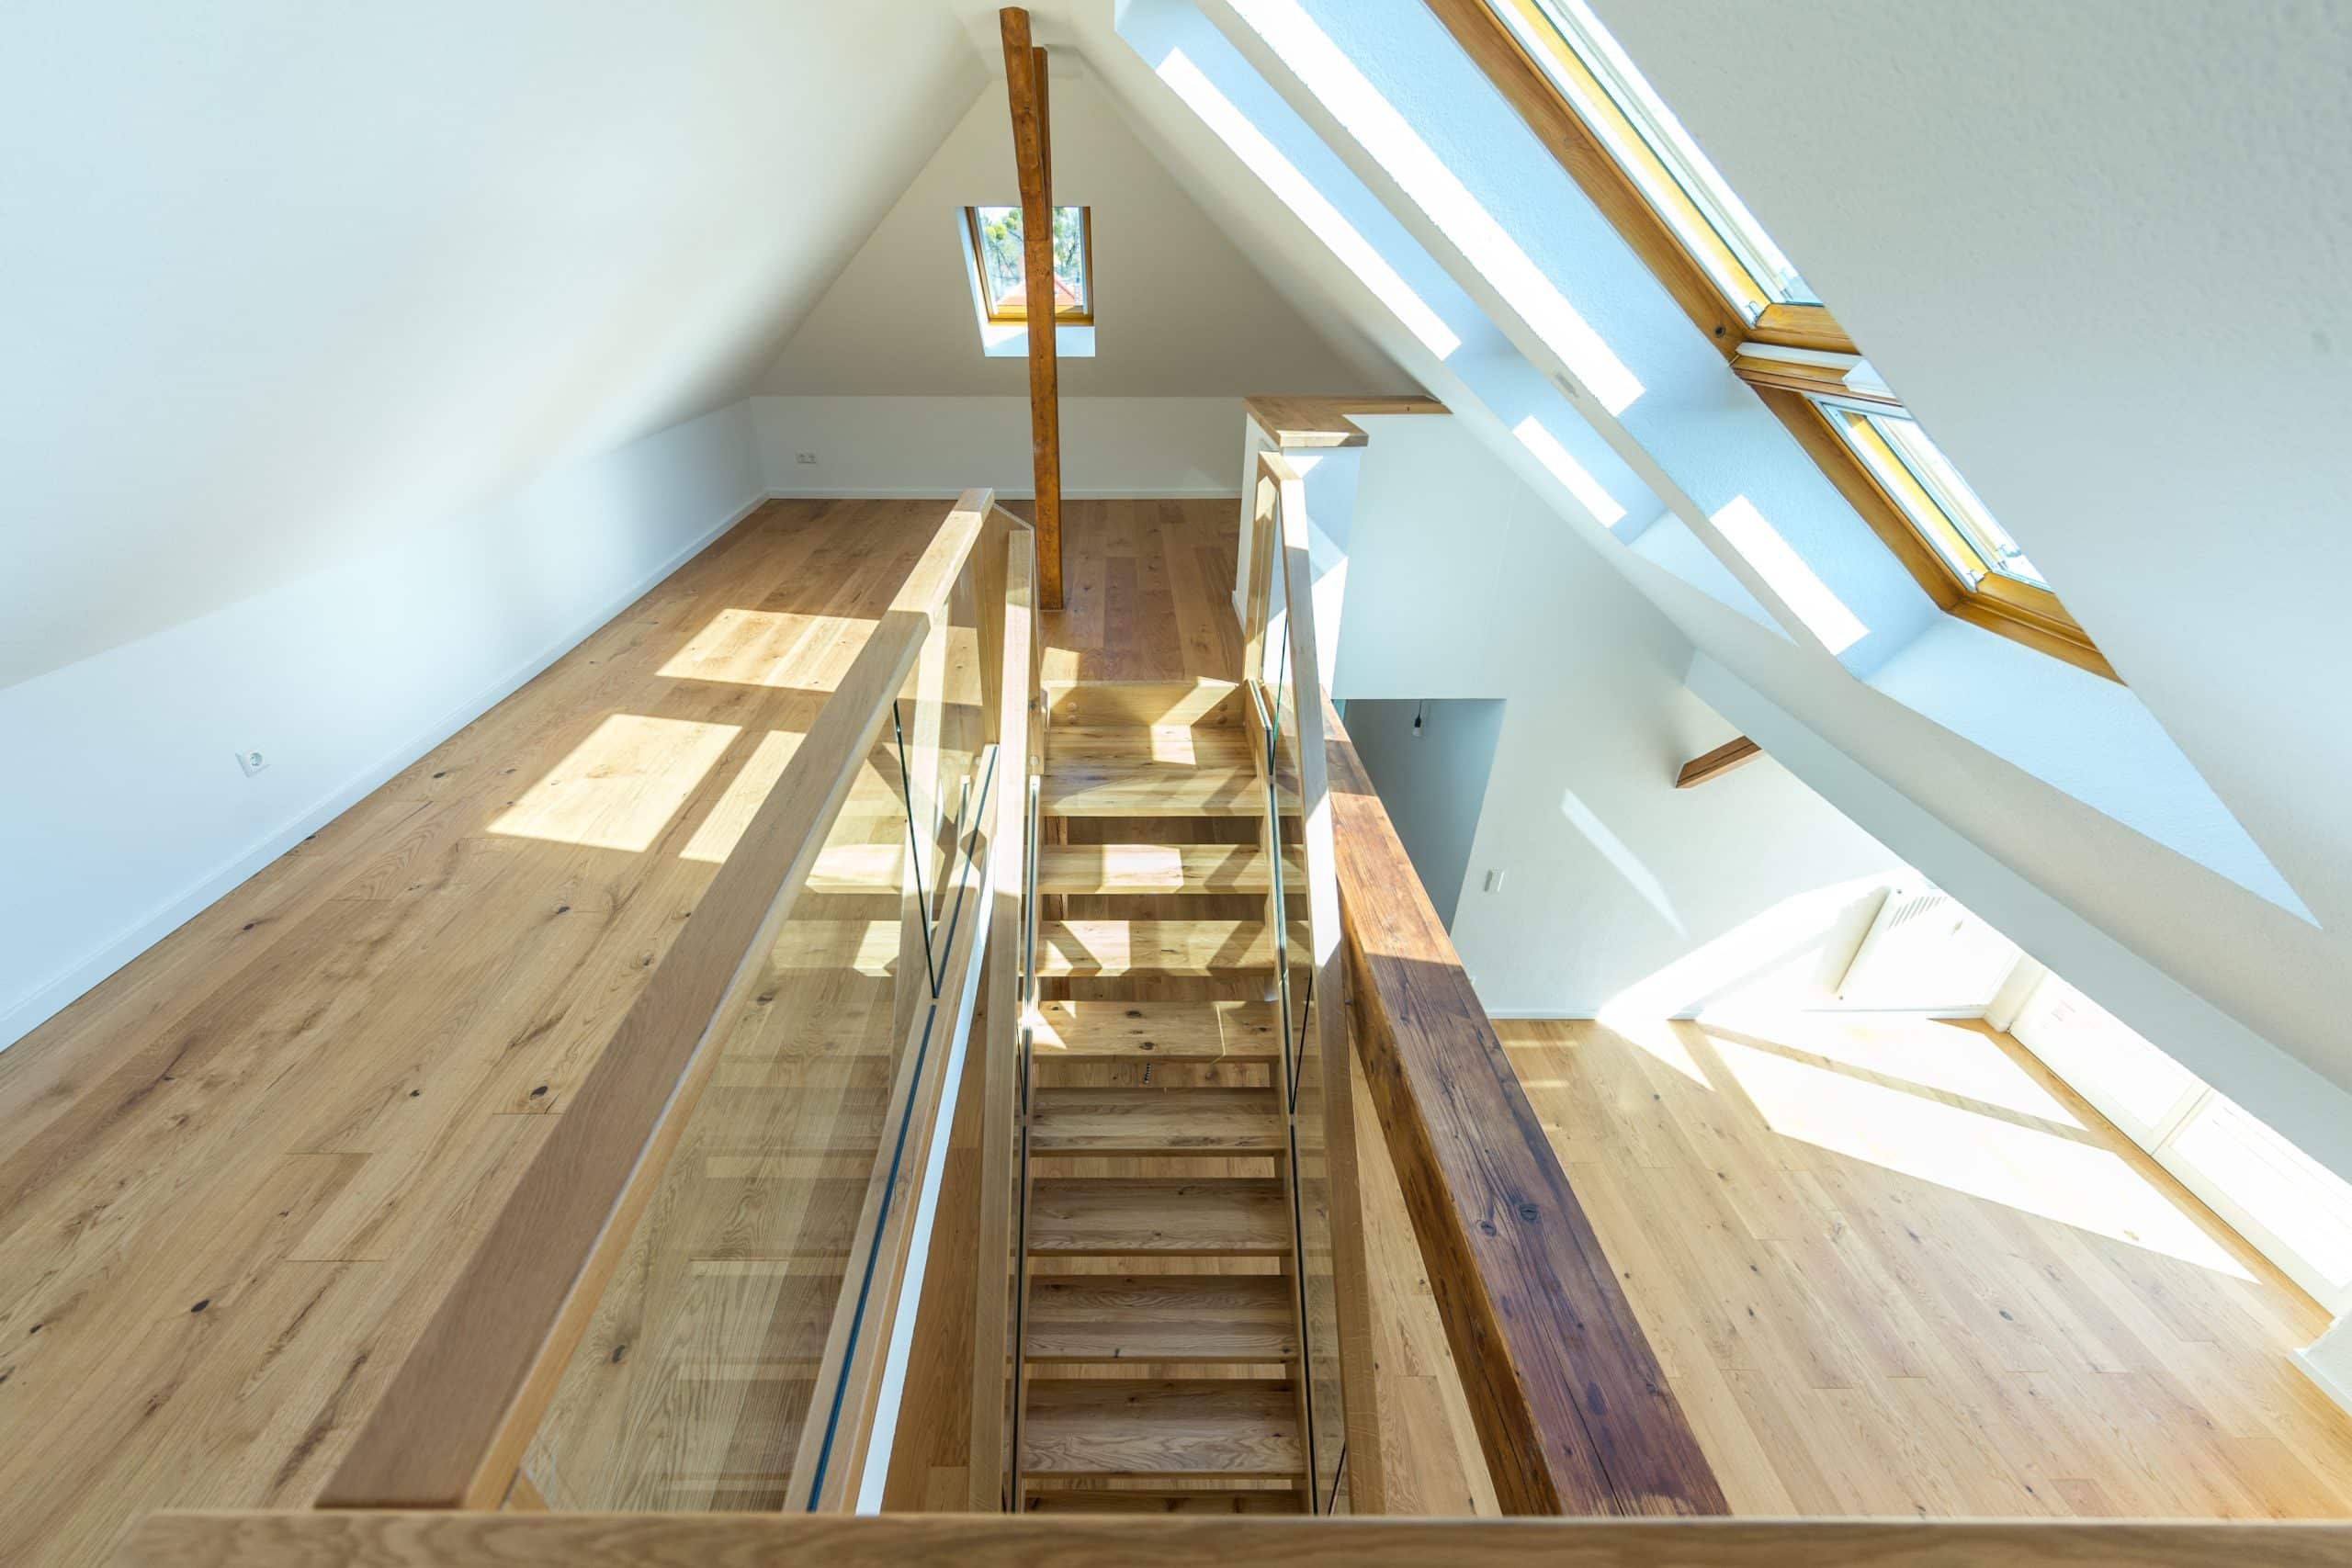 Treppenmeister präsentiert einen modernen Treppenaufgang ins Dachgeschoß, in einem großen lichtdurchfluteten Raum mit Glasgeländer und dazu passendem Holzboden.